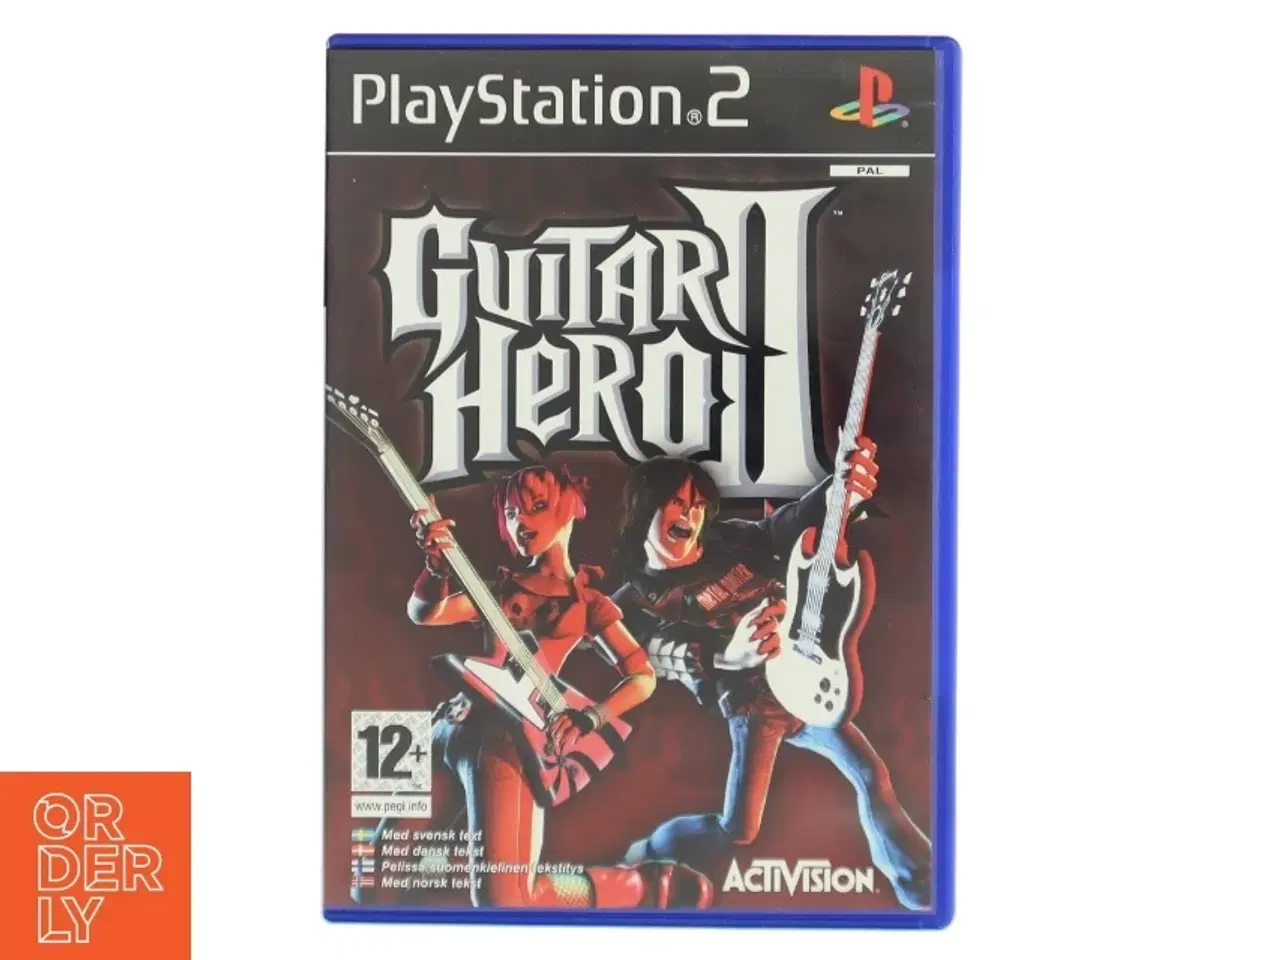 Billede 1 - Guitar Hero II til PlayStation 2 fra Activision